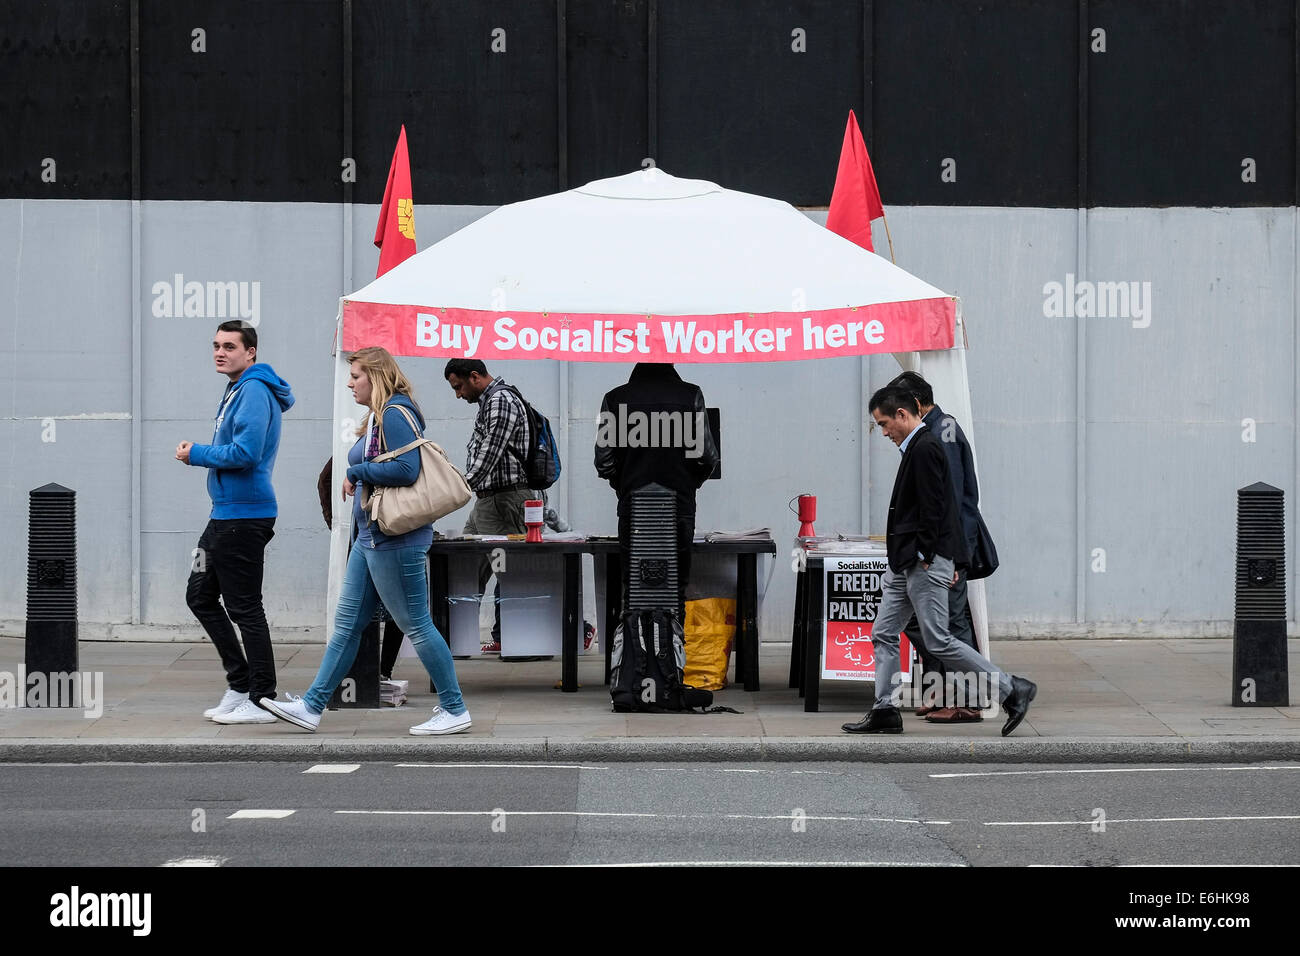 Un étal vendant des exemplaires du journal Socialist Worker dans une rue. Banque D'Images